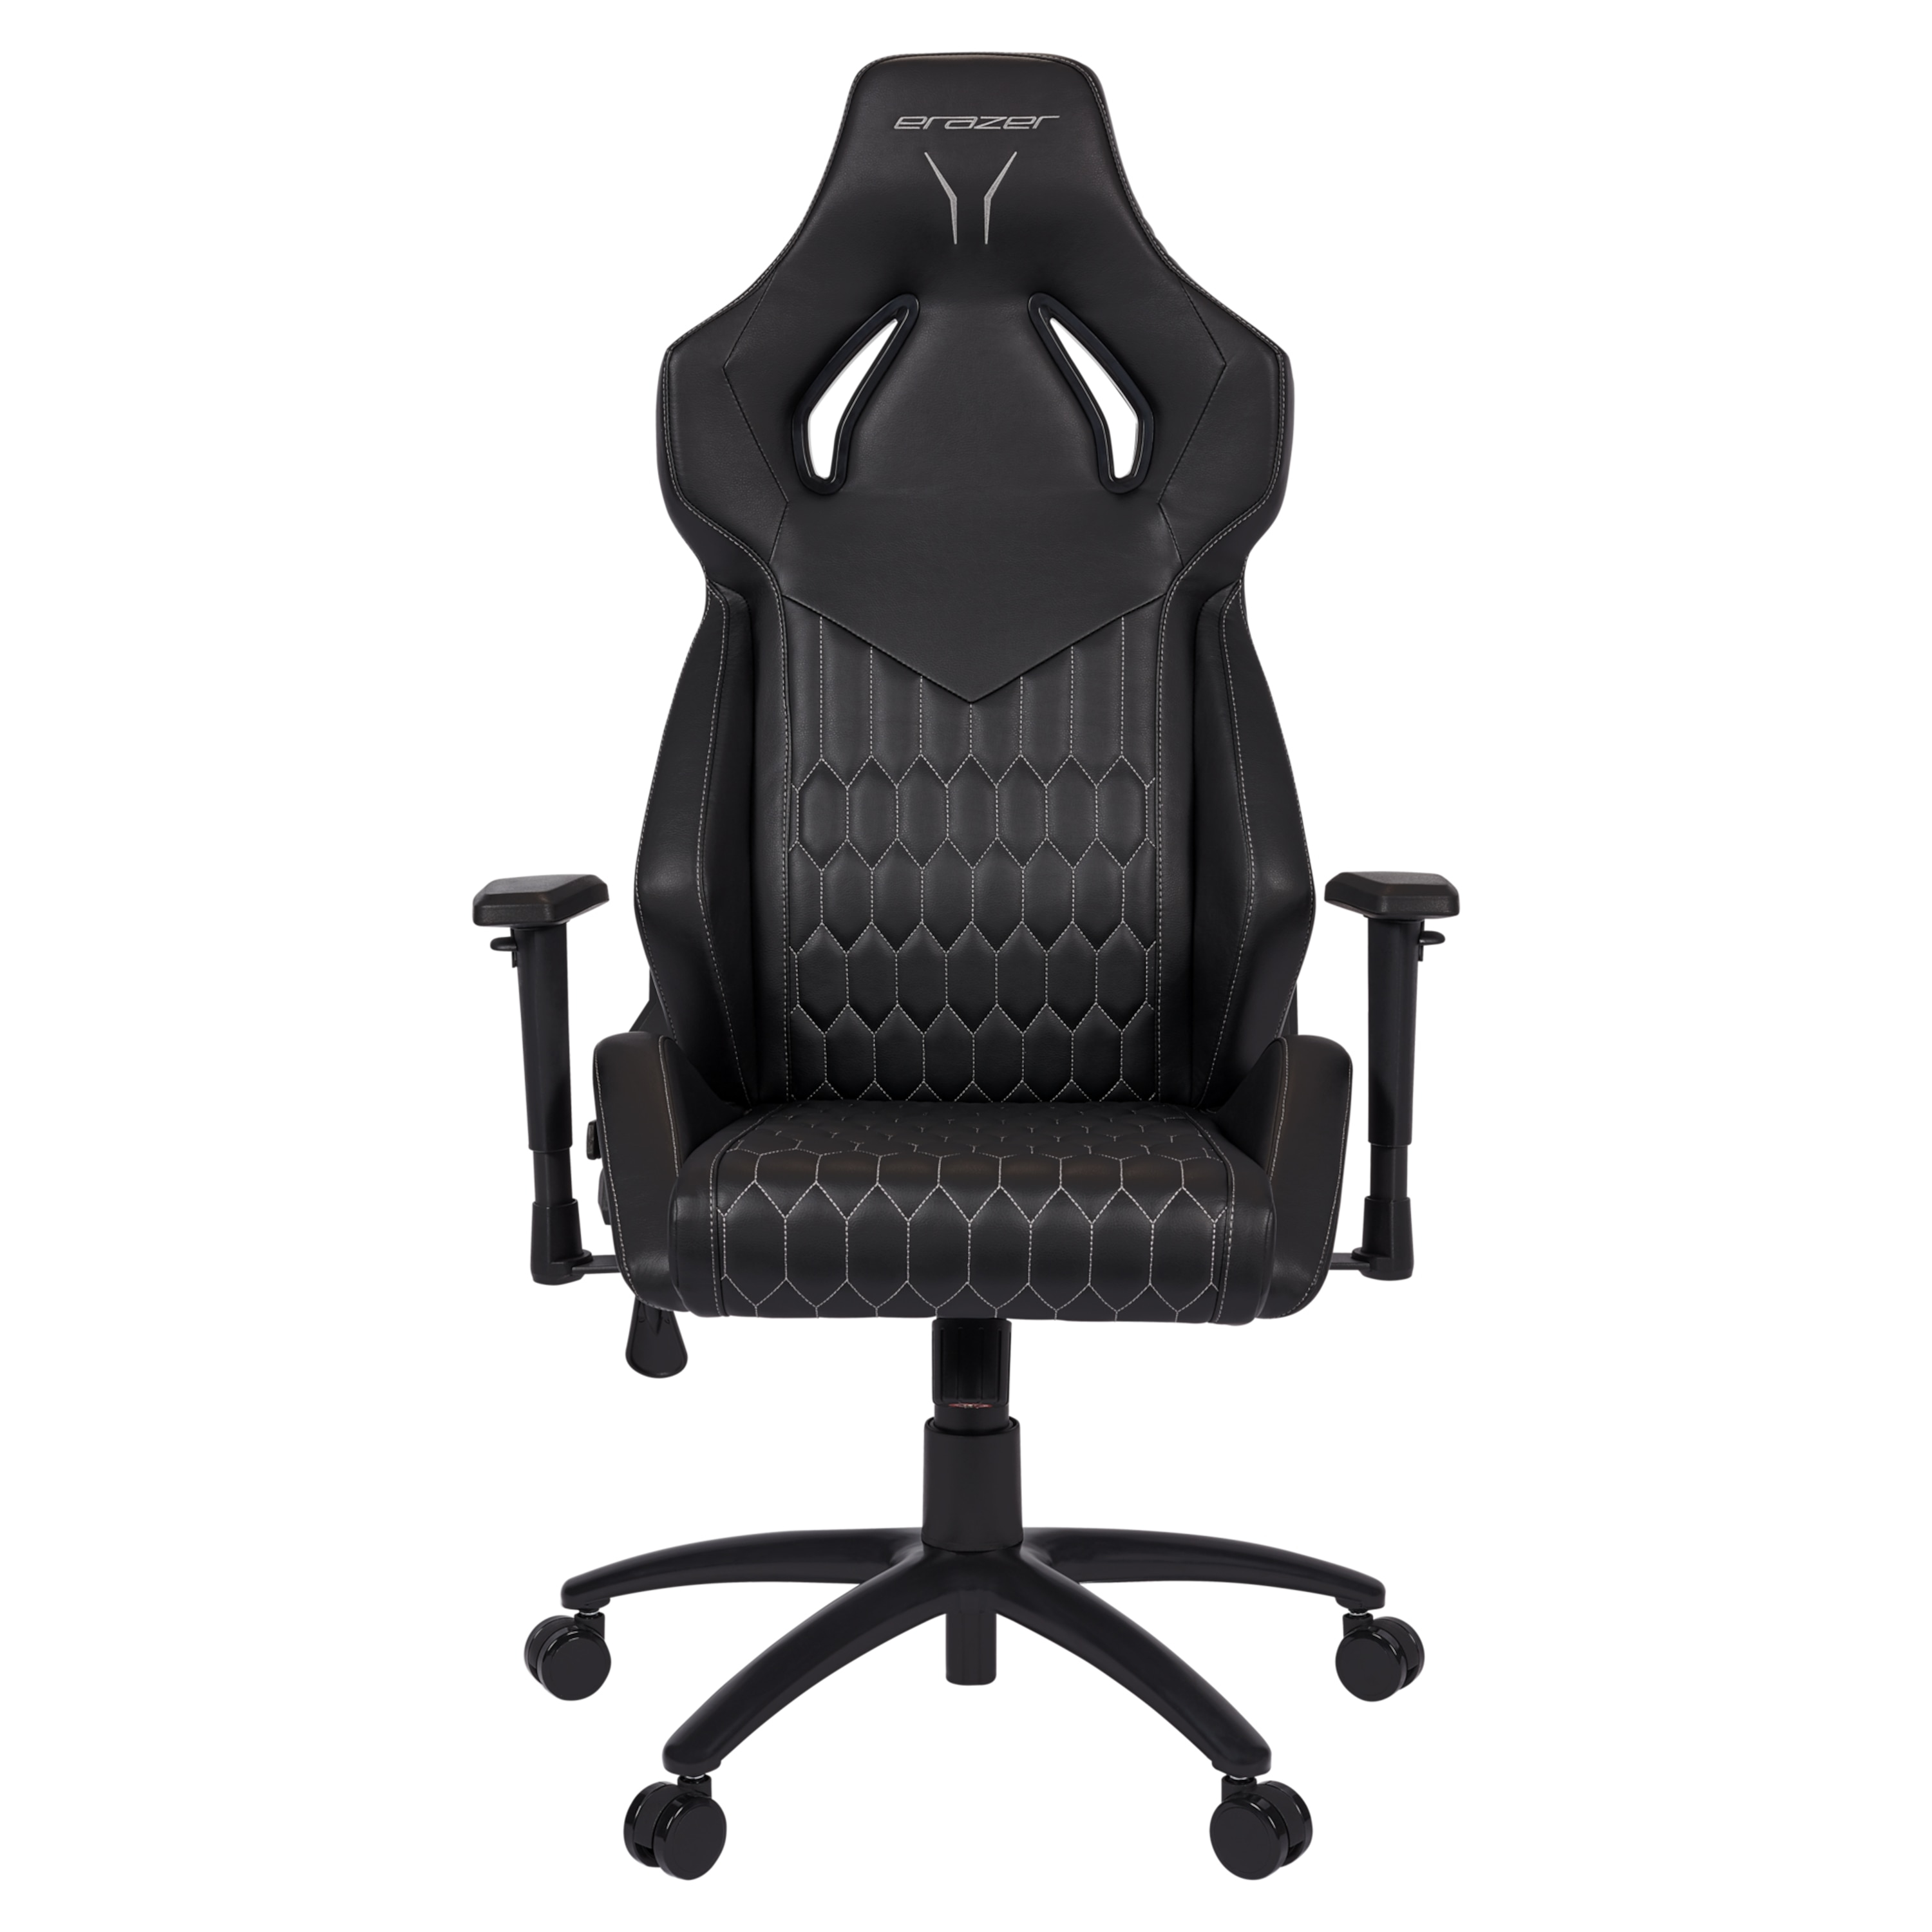 MEDION ERAZER Druid P10 Gaming stoel | hoog zitcomfort | sportieve look | hoogwaardige materialen &amp; ergonomisch ondersteunde zitpositie